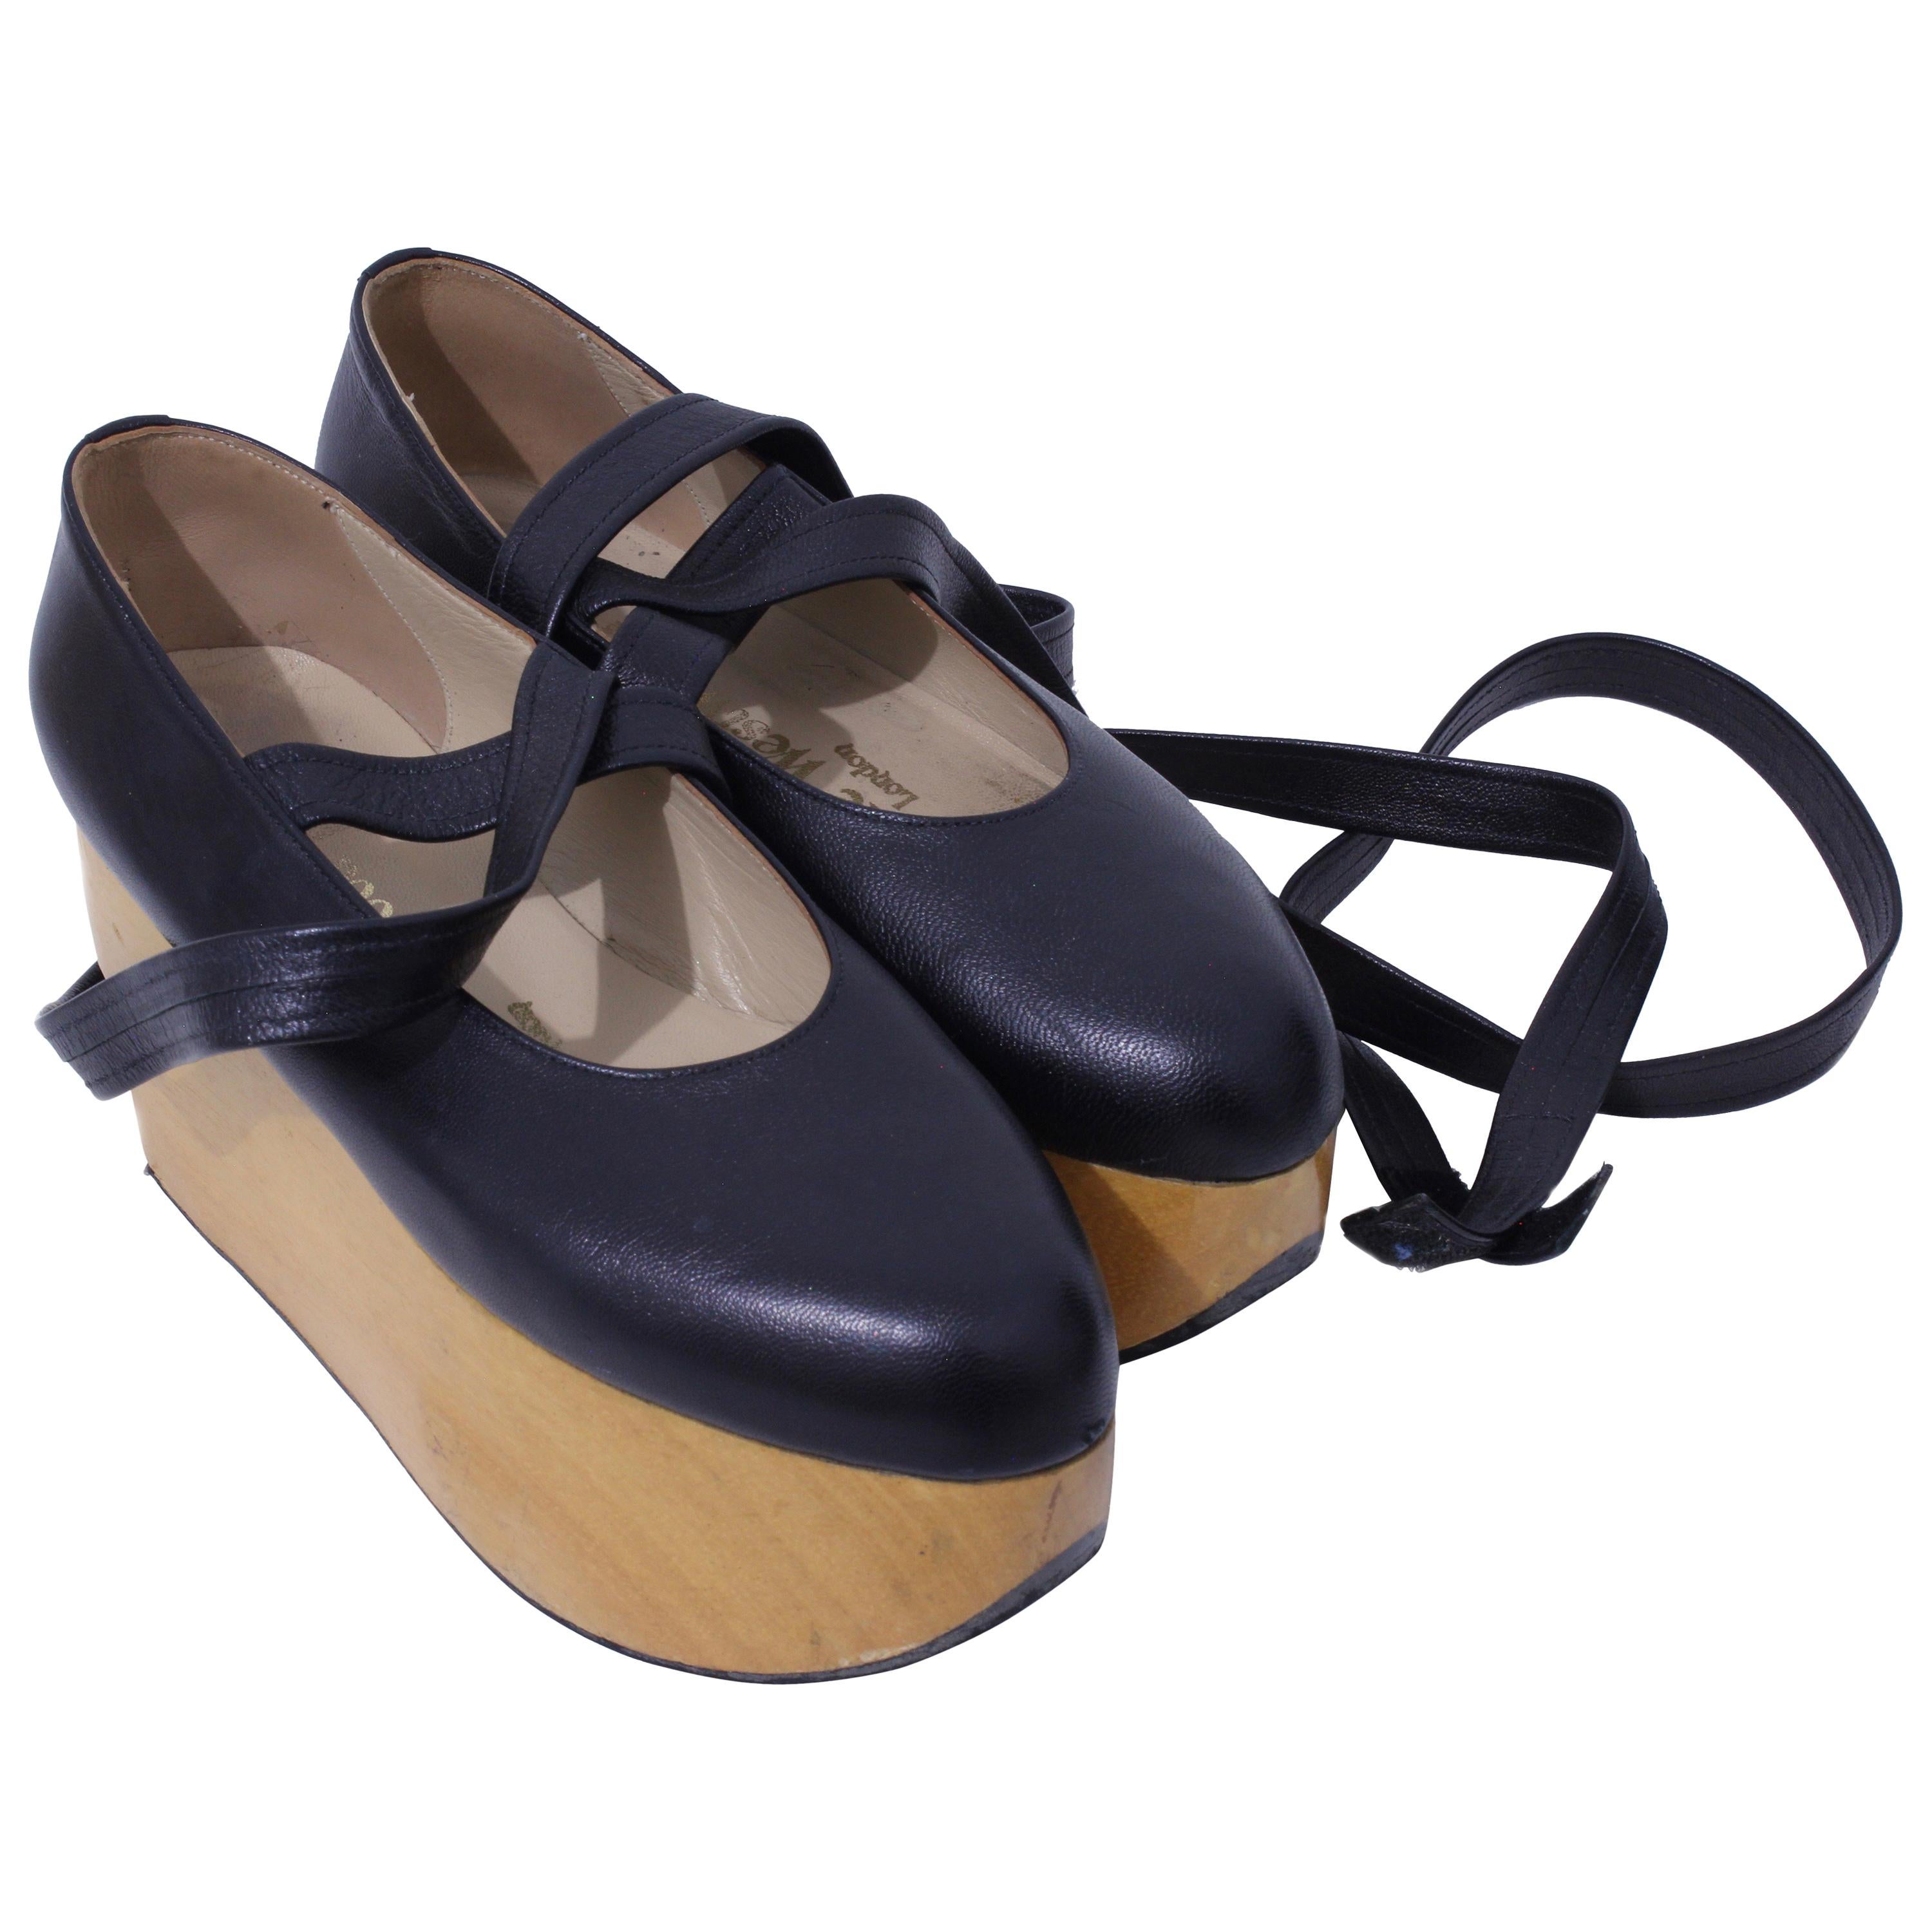 Vivienne Westwood Rocking Horse Shoes Black Leather Ballerina Platforms US6 UK5